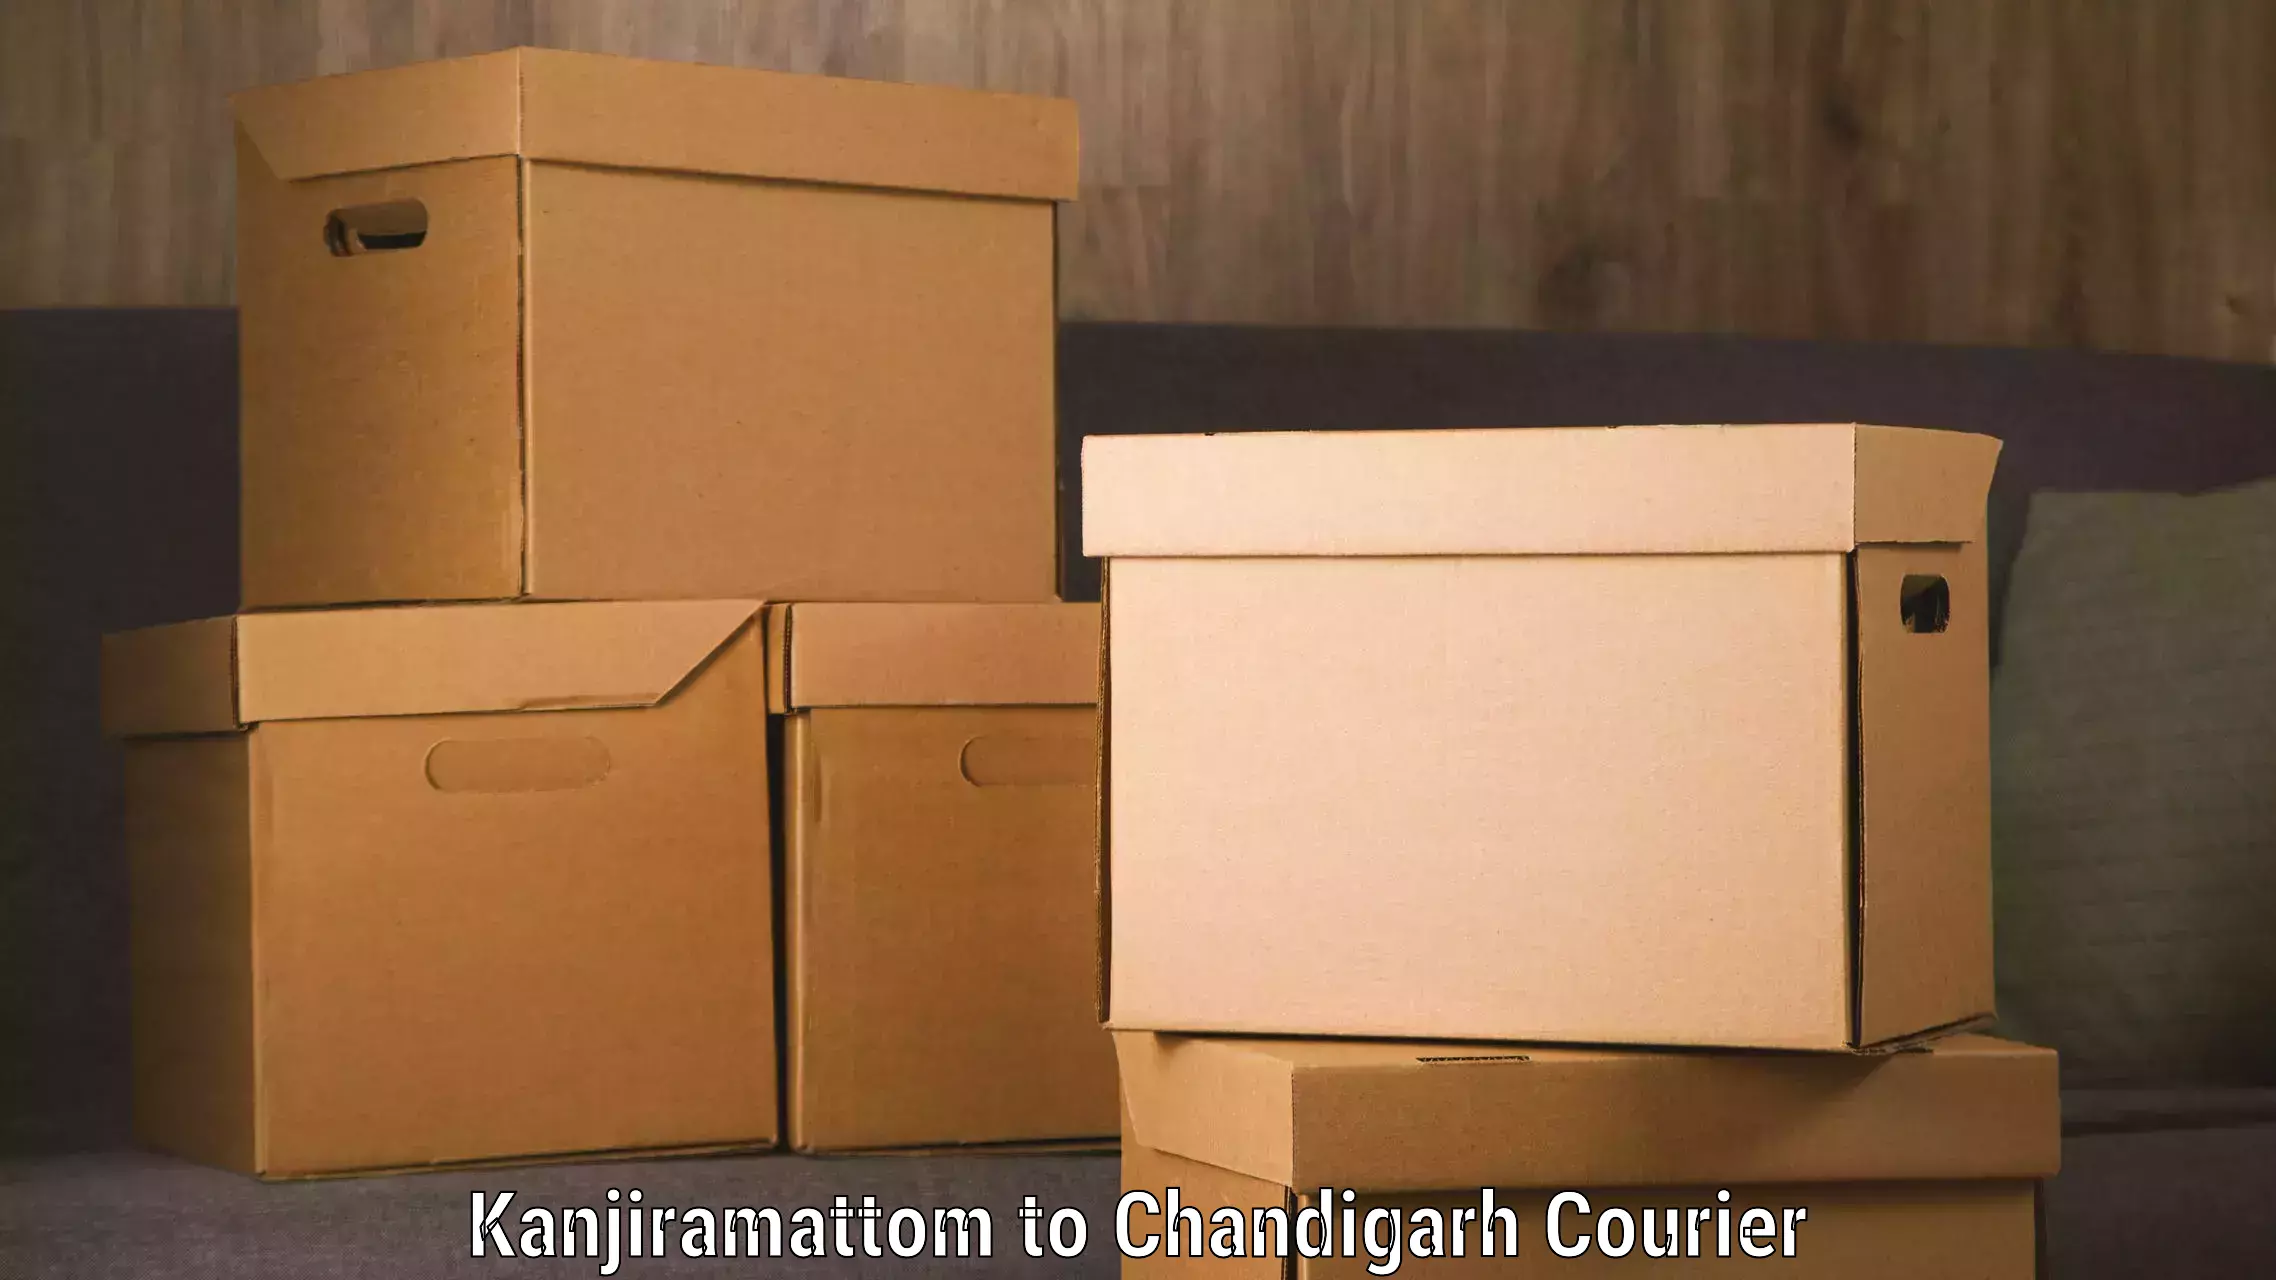 Express logistics providers Kanjiramattom to Chandigarh